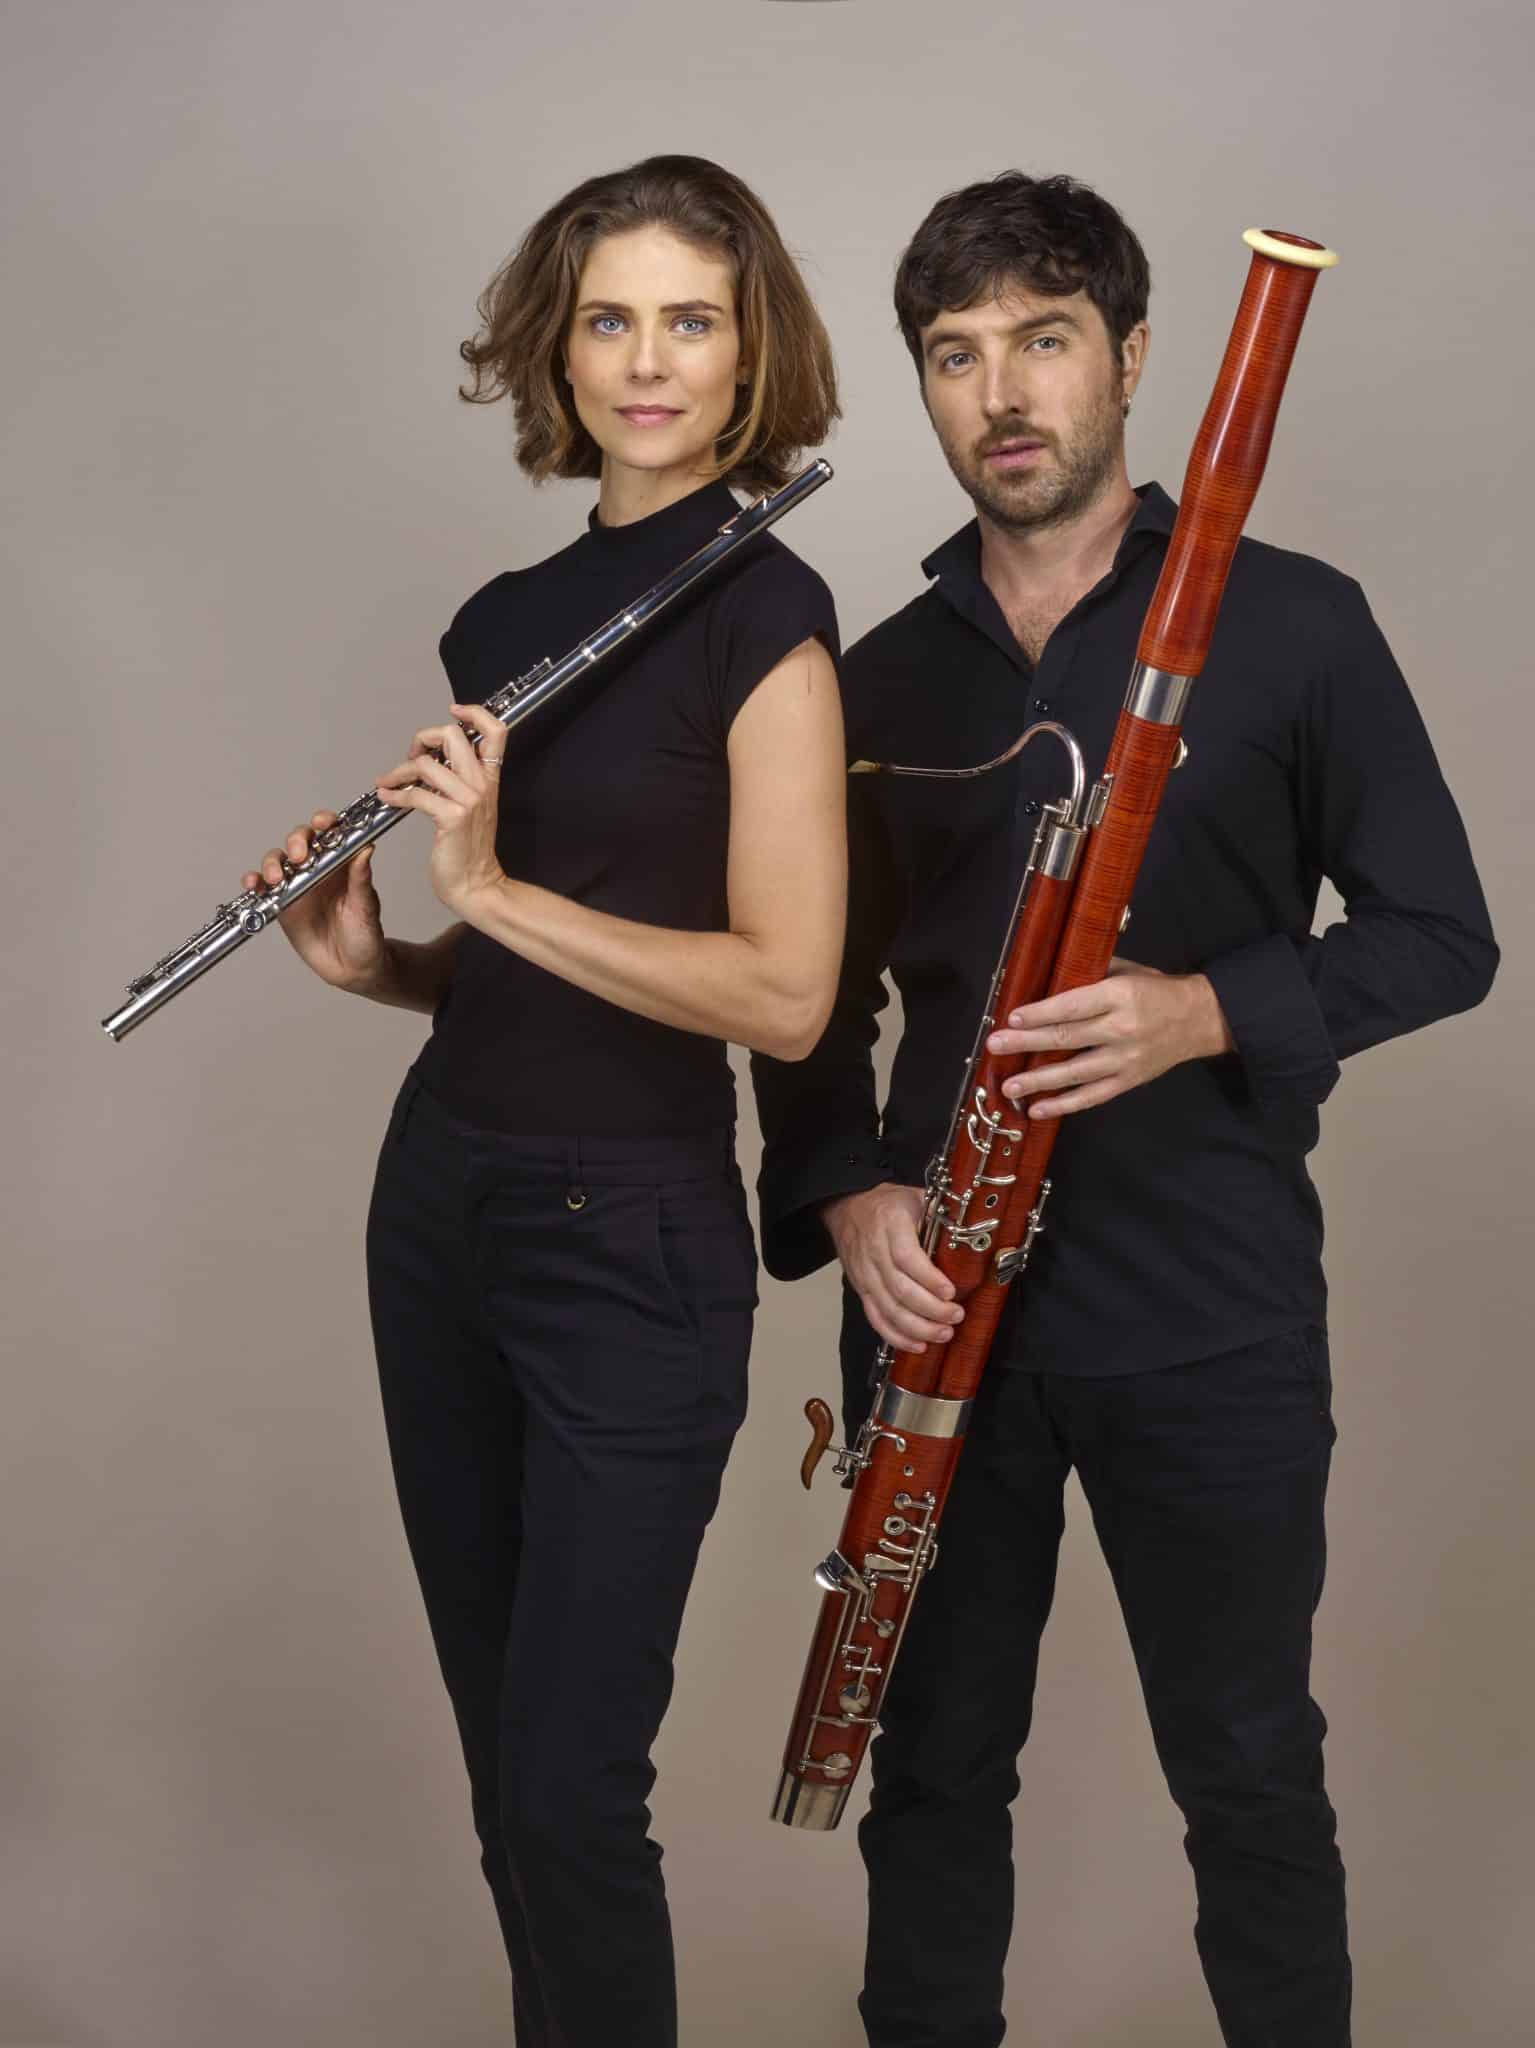 revistaprosaversoearte.com - Duo Ceccato e Béchemin - flauta e fagote se apresenta no Espaço Guiomar Novaes